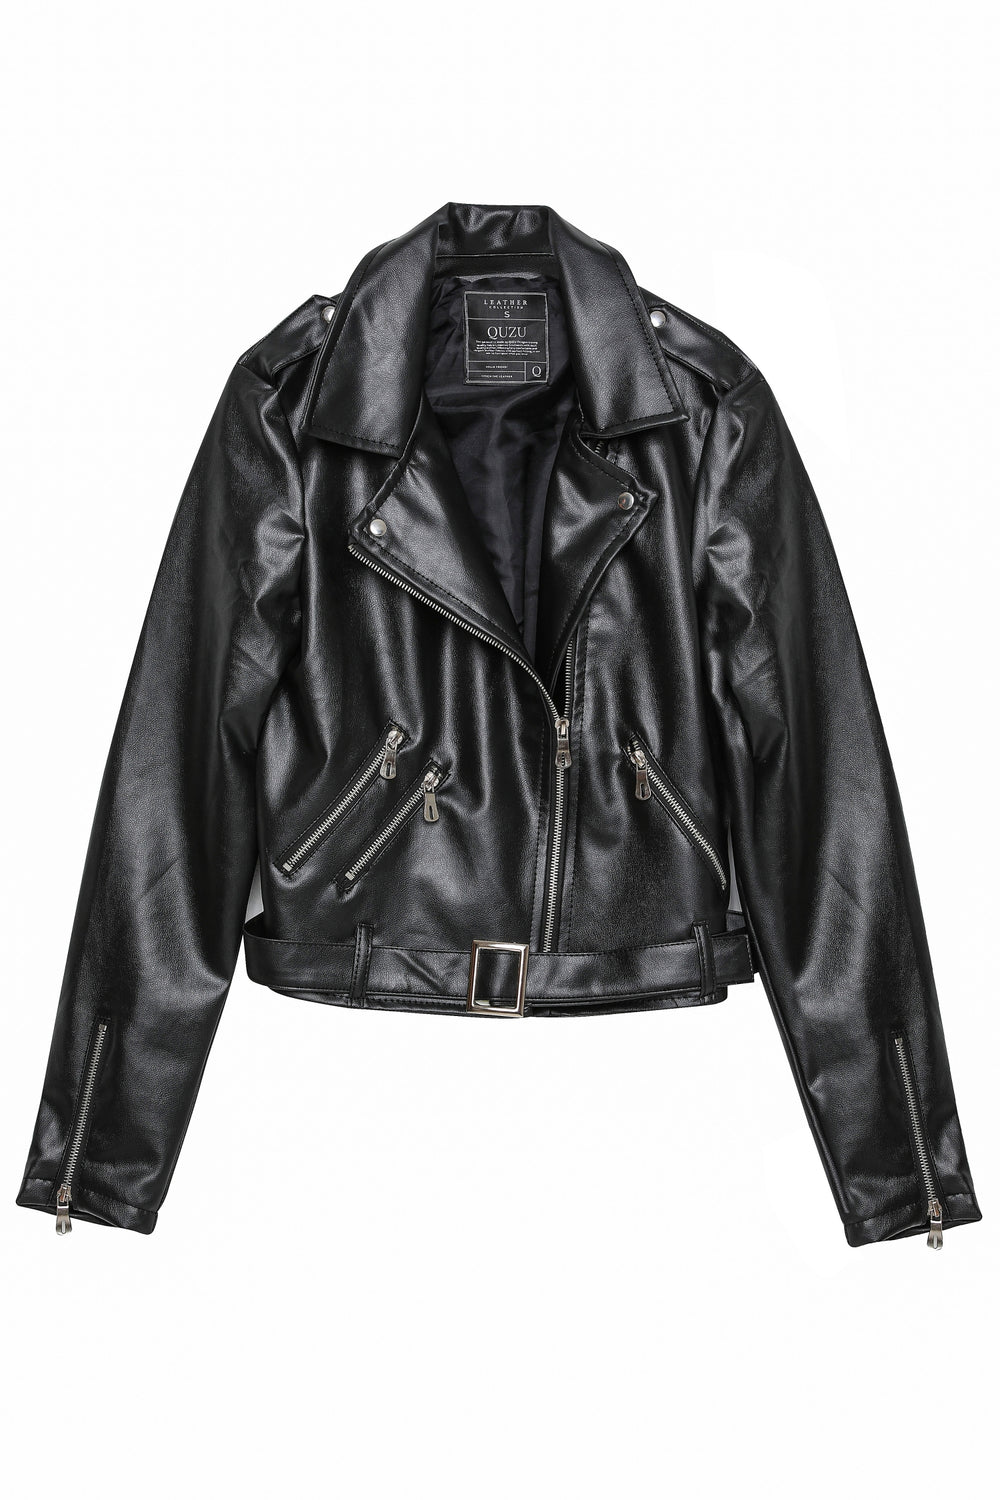 Pocket Biker Leather Jacket Black